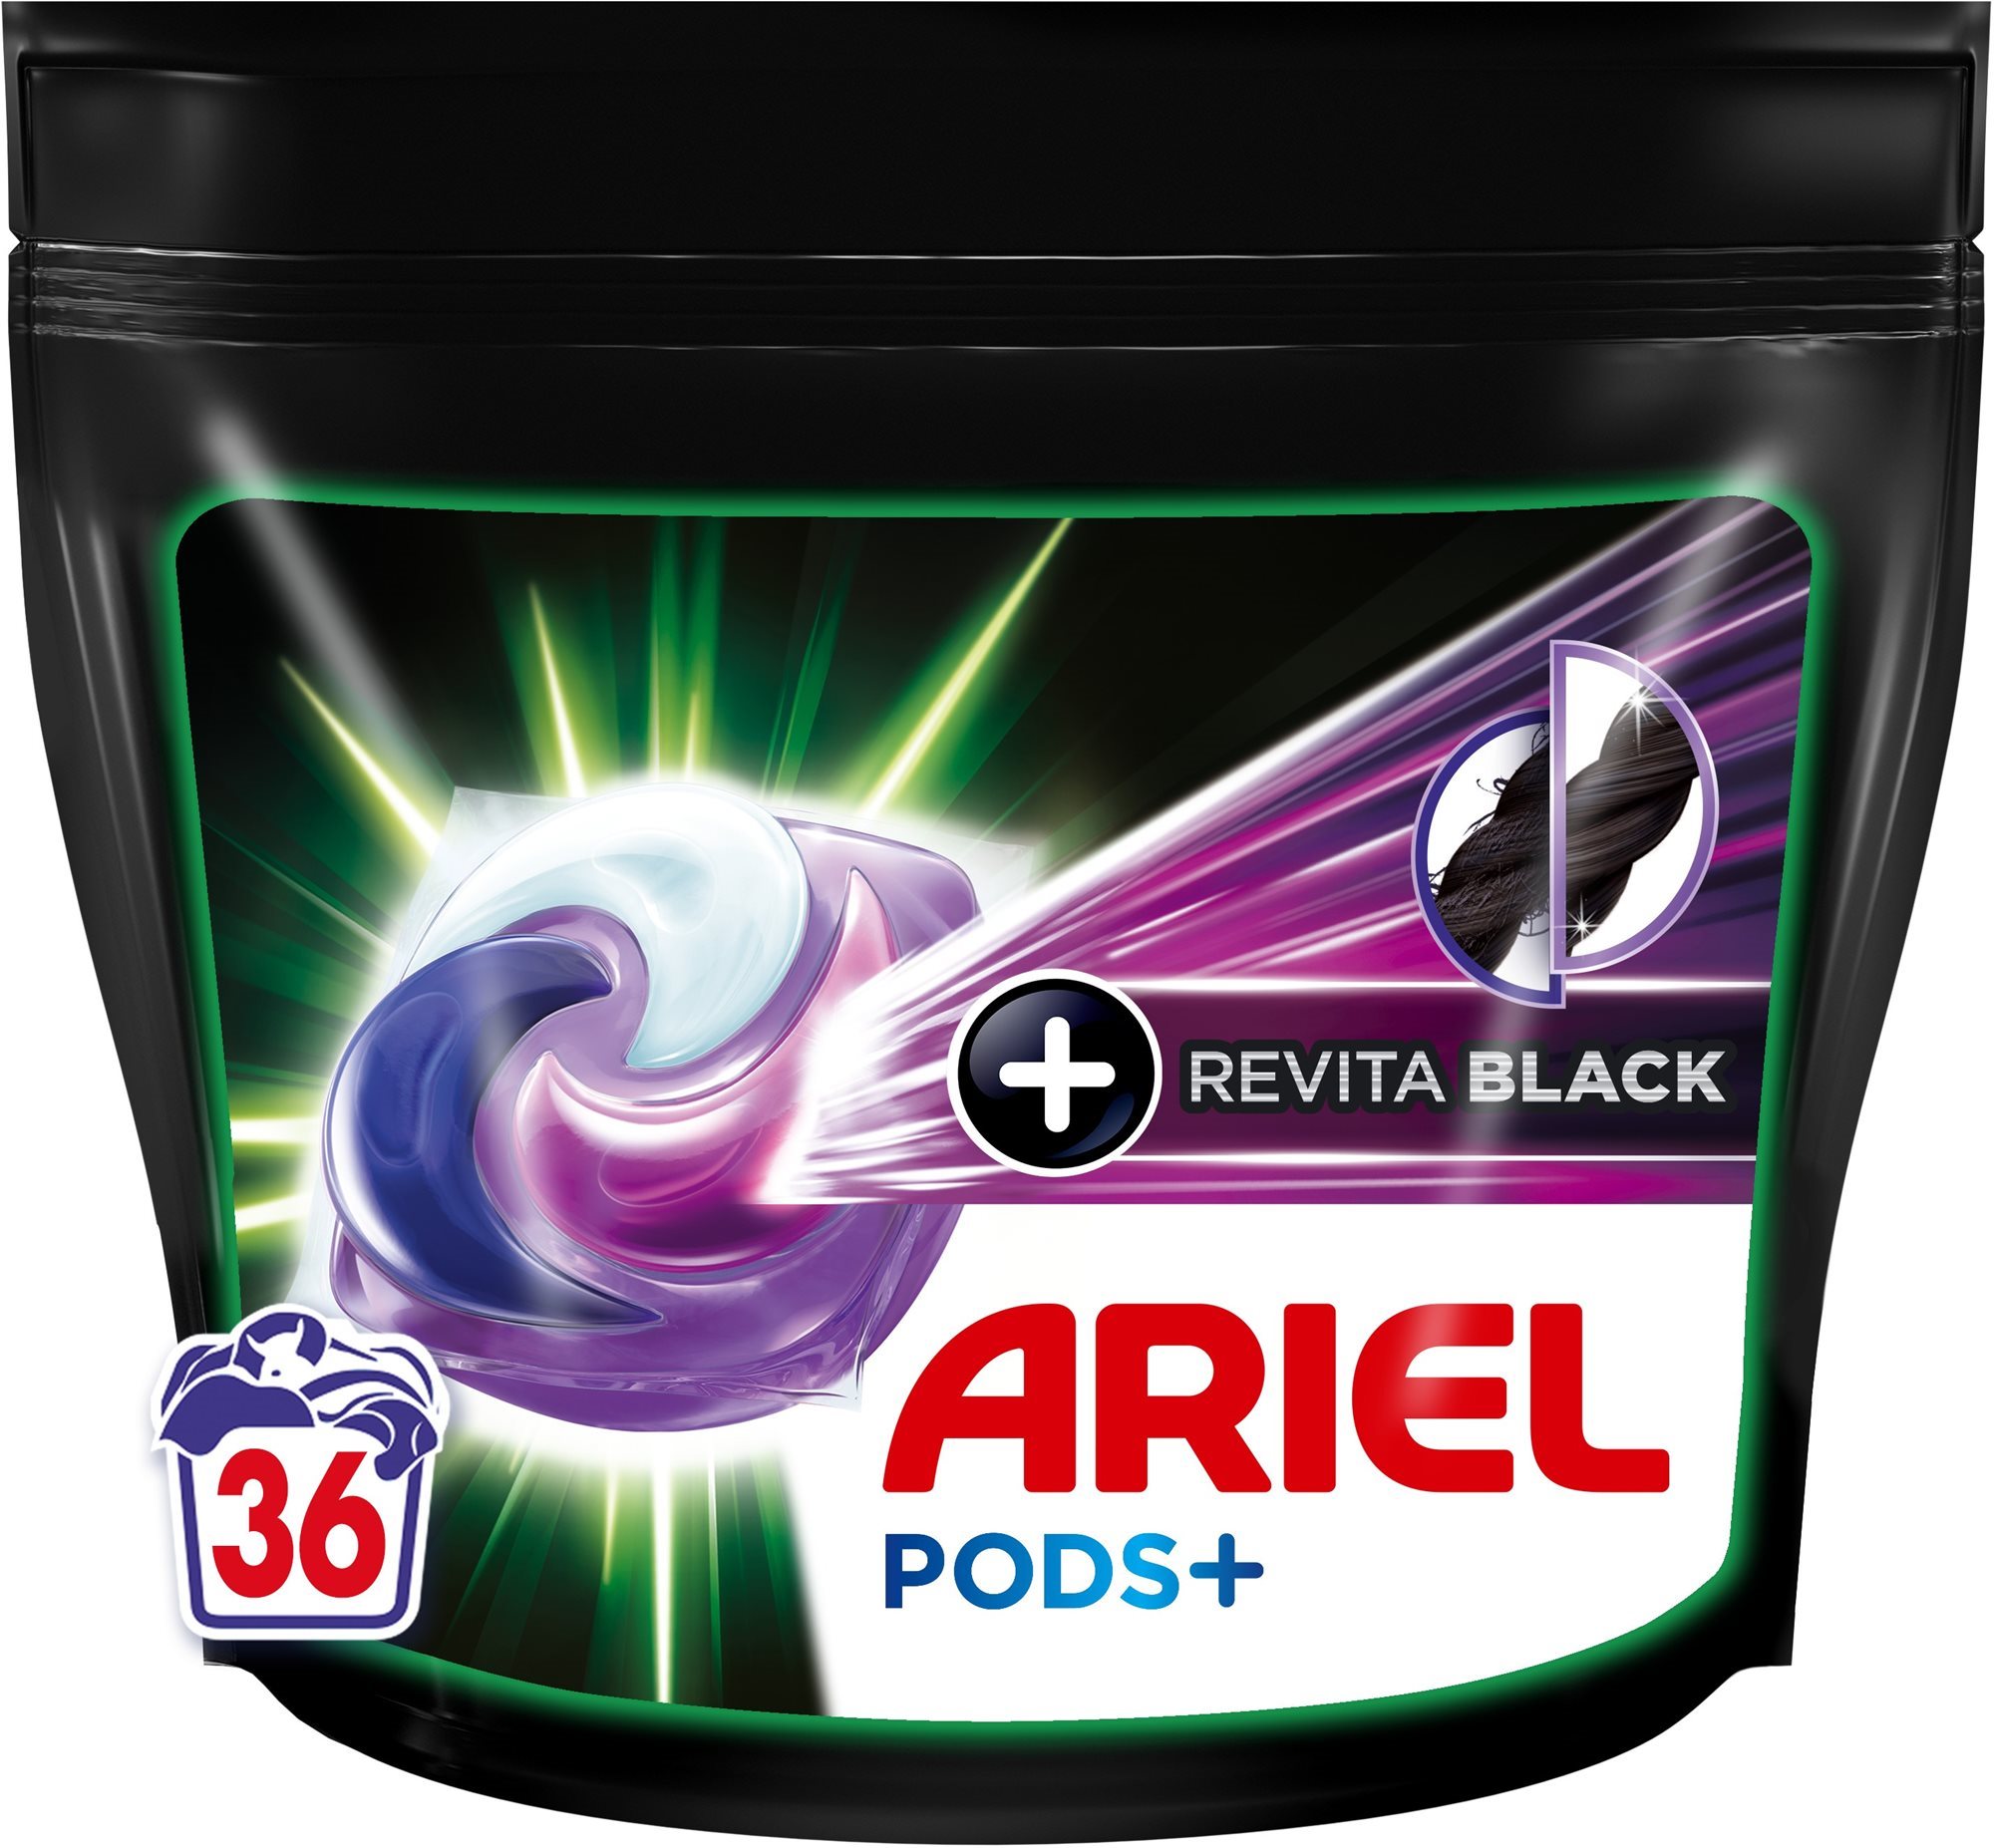 ARIEL+ Revita Black 36 db